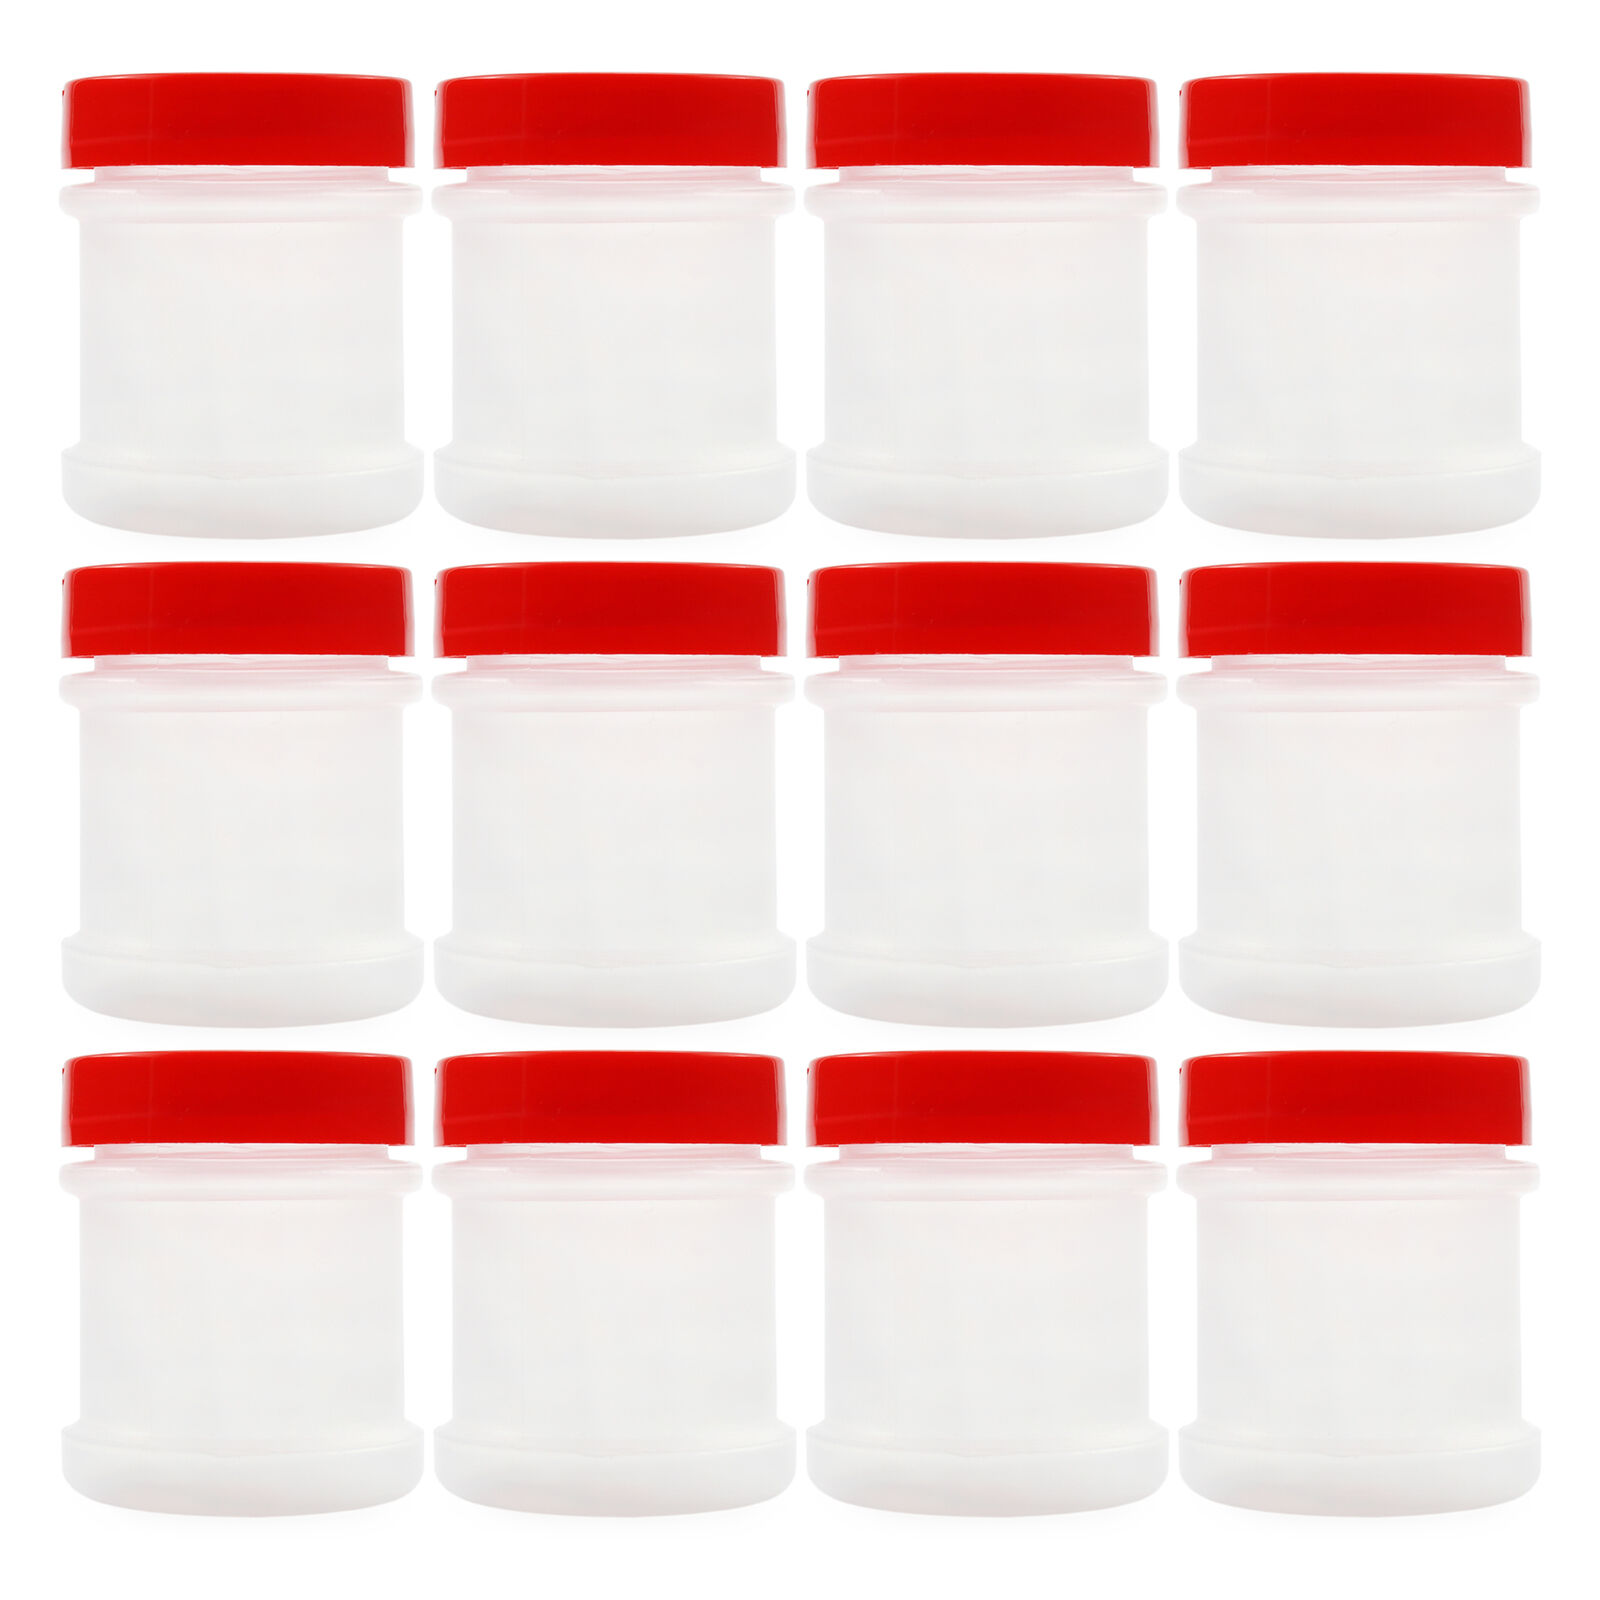 Mini Plastic Spice Jars w/ Sifters 12pk, Red; 2 Tbs Capacity / 1 Fluid Oz.